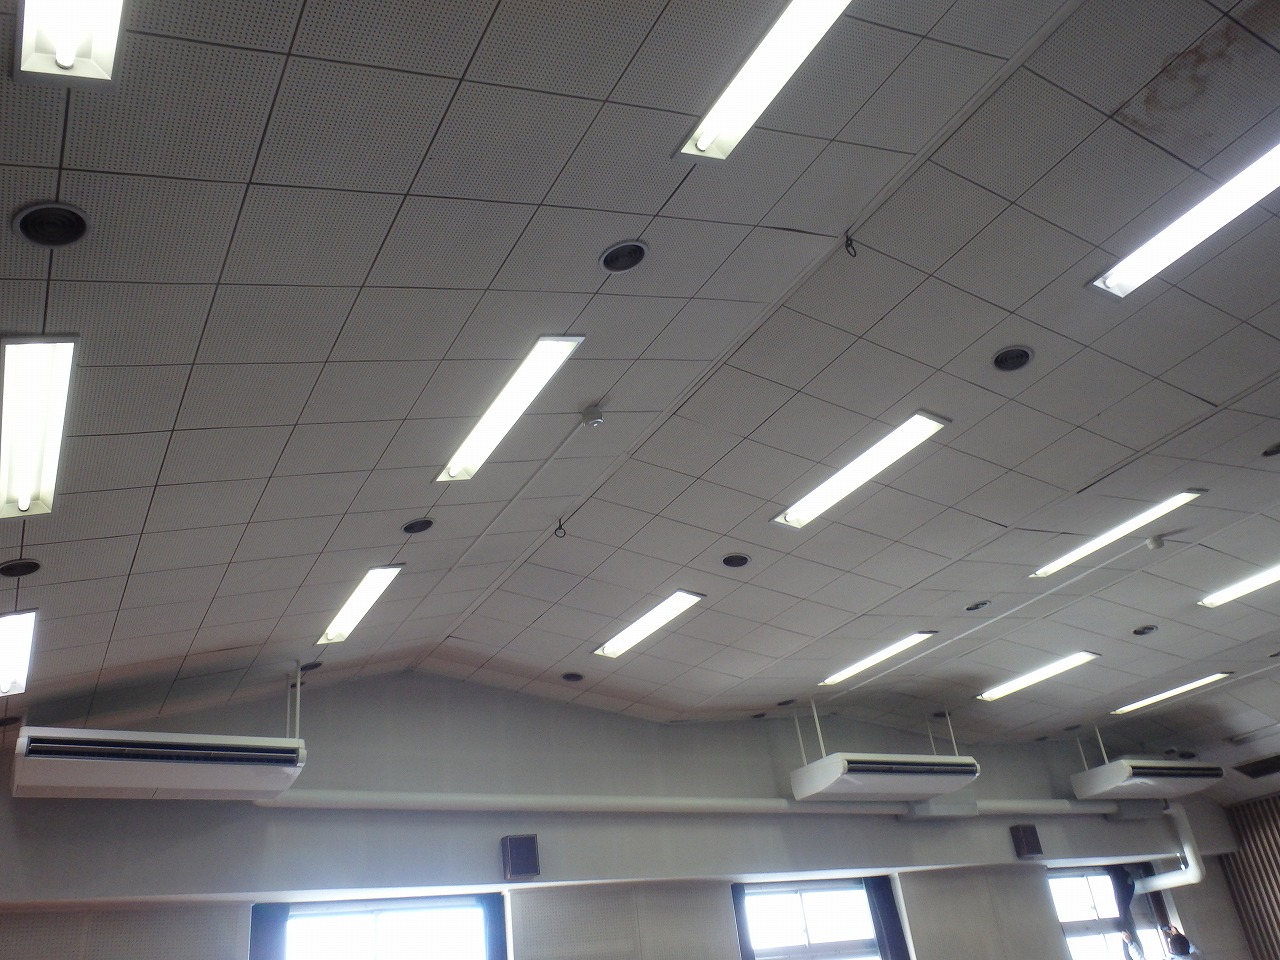 神奈川県立高等学校空調設備整備工事-空気調和・給排水衛生設備工事-